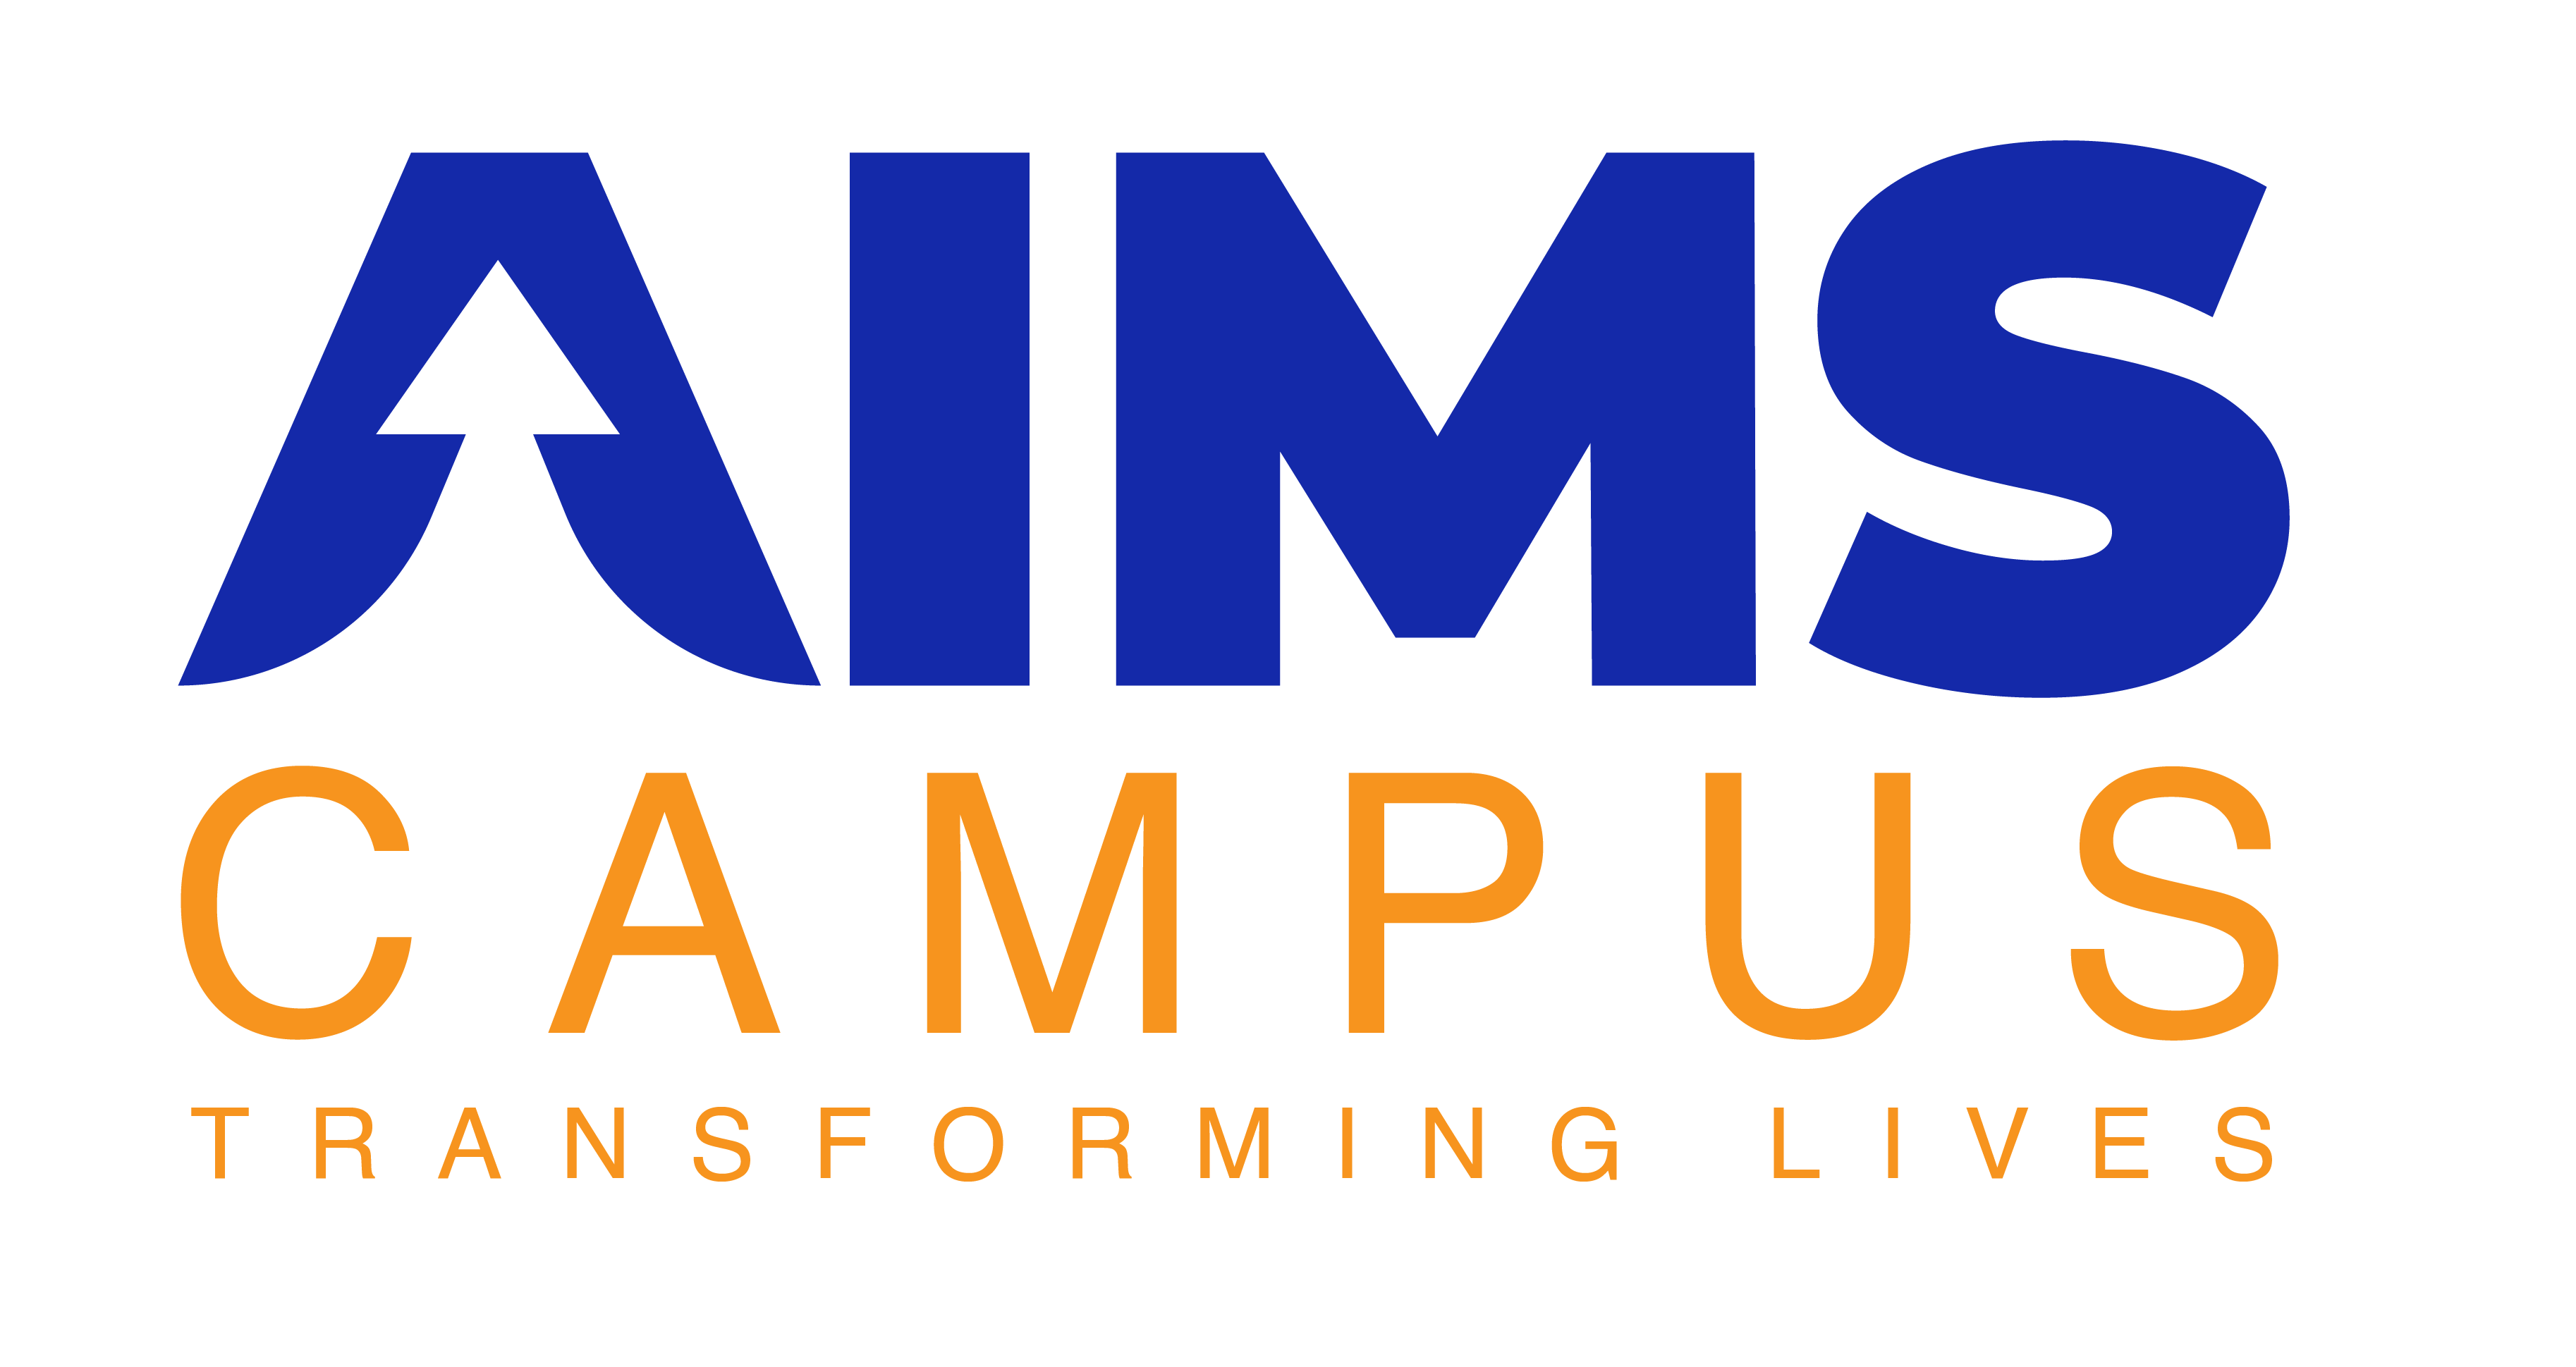 AIMS Campus